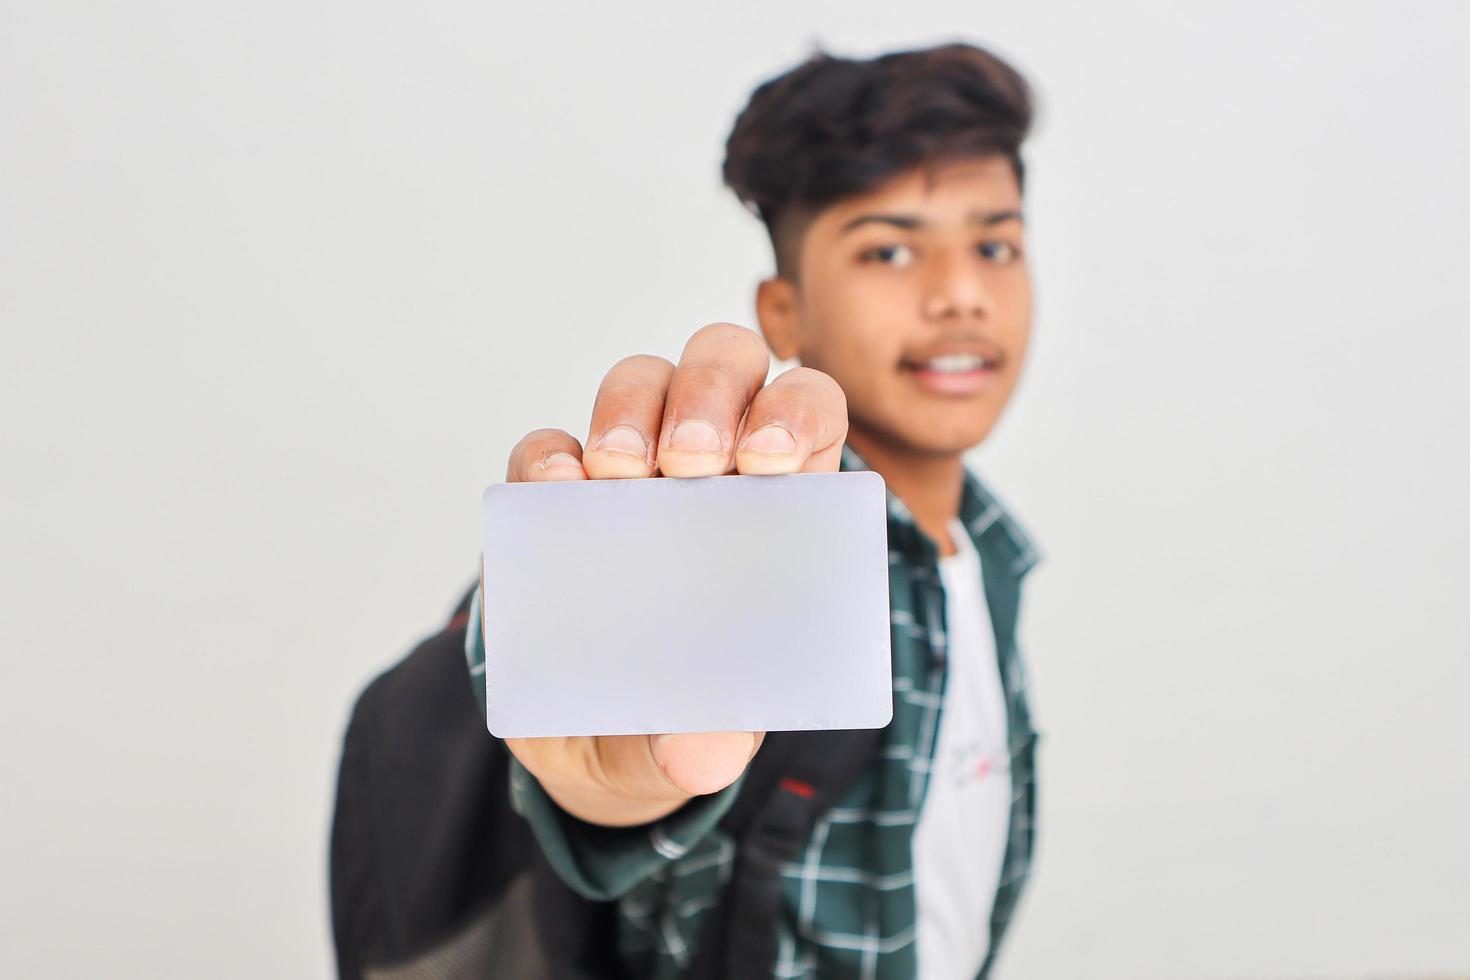 jovem indiano mostrando cartão de débito ou crédito em fundo branco. foto